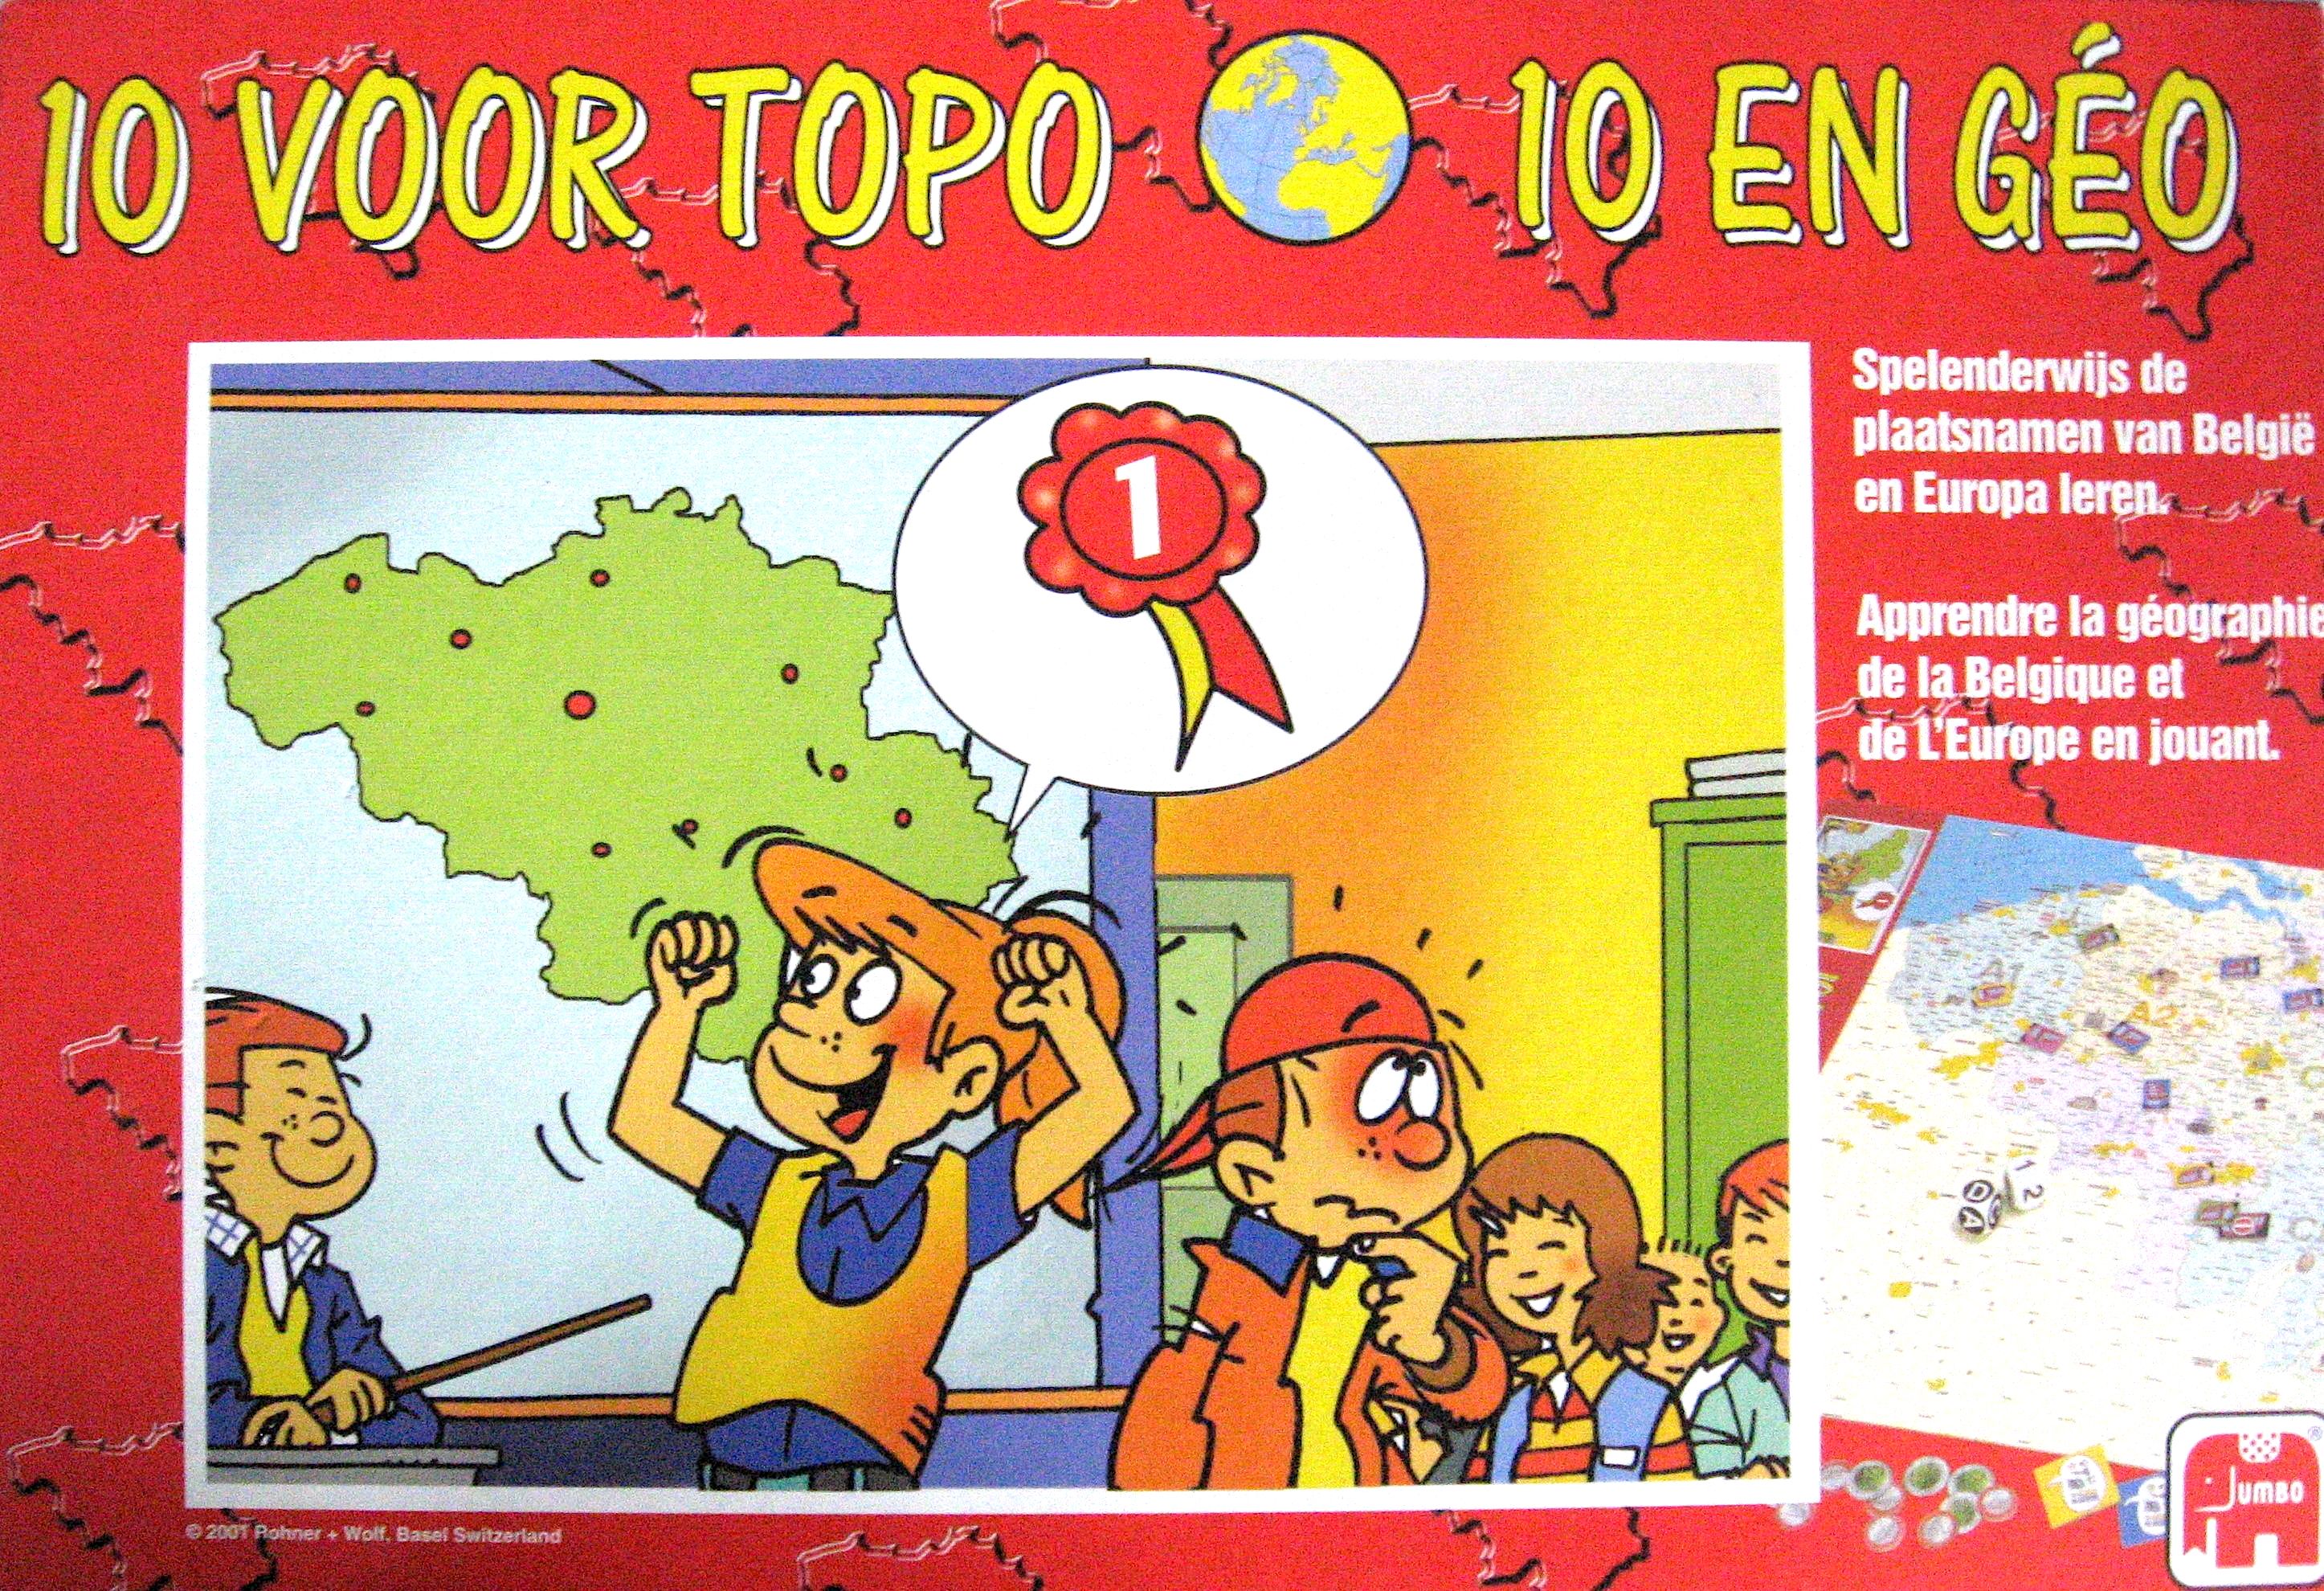 10 voor Topo (10 en Géo)